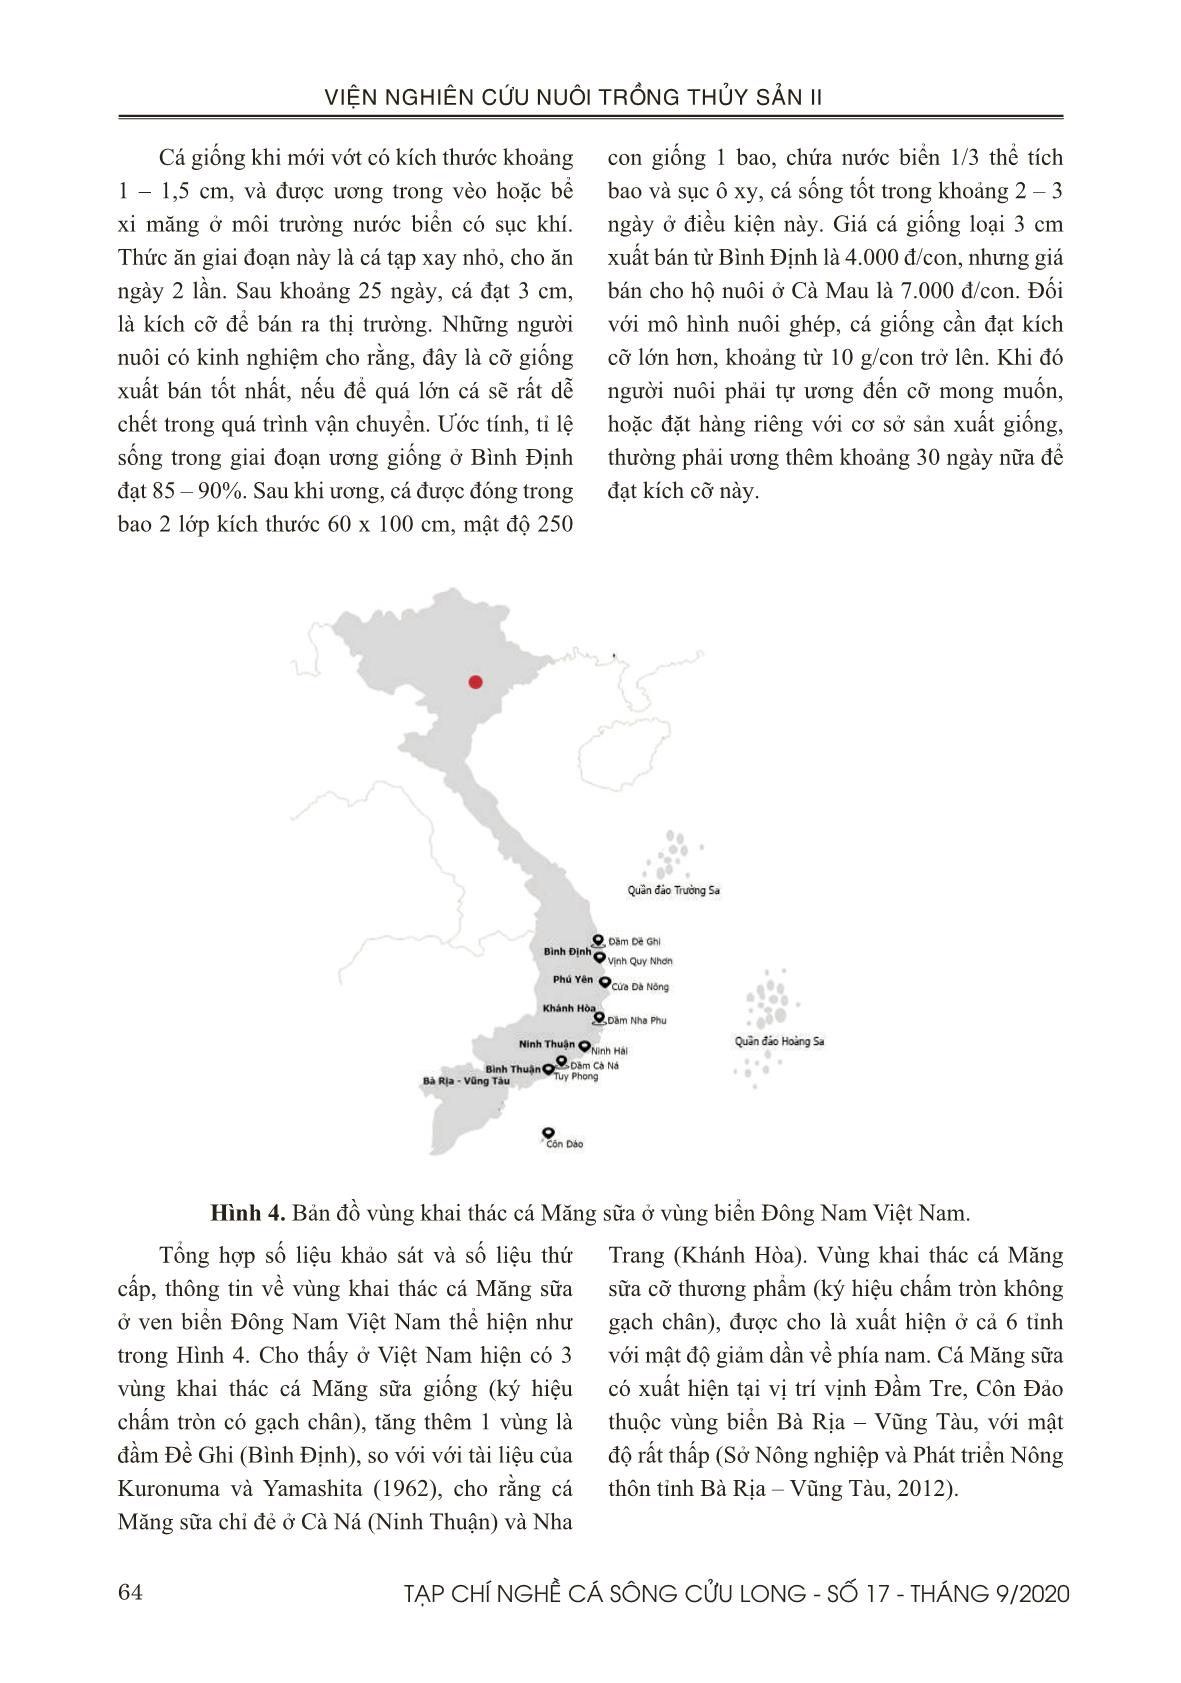 Hiện trạng khai thác và phát triển nuôi cá măng sữa (chanos chanos) ở vùng biển đông nam Việt Nam trang 7